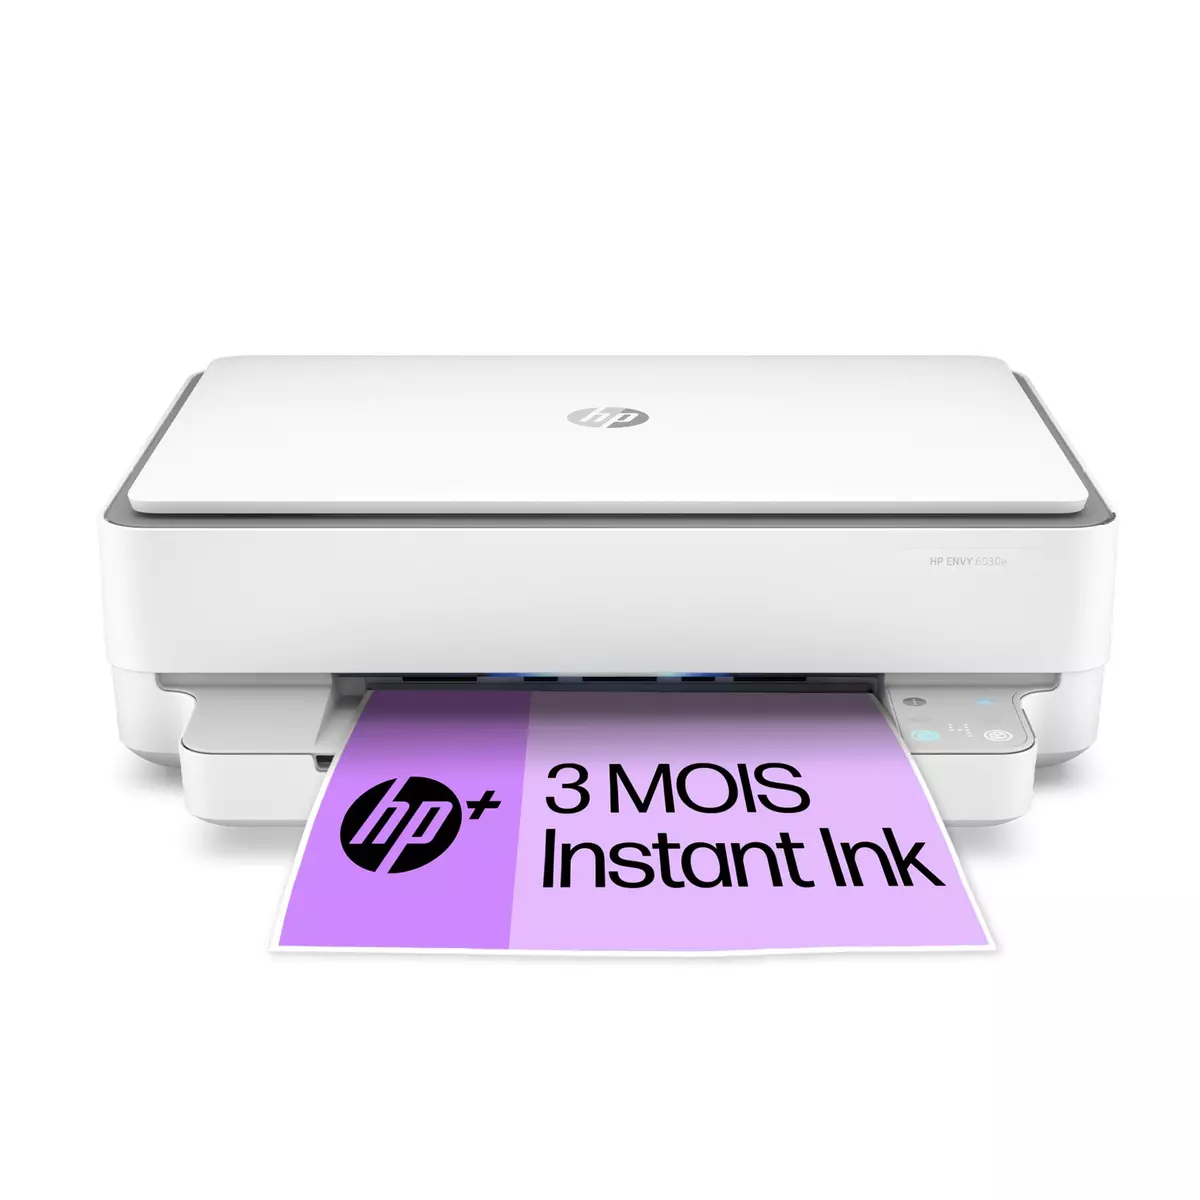 HP Envy 6030e Imprimante tout-en-un Jet d'encre couleur - 6 mois d' Instant  ink inclus avec HP+ ( A4 Copie Scan Recto verso Wifi ) pas cher 